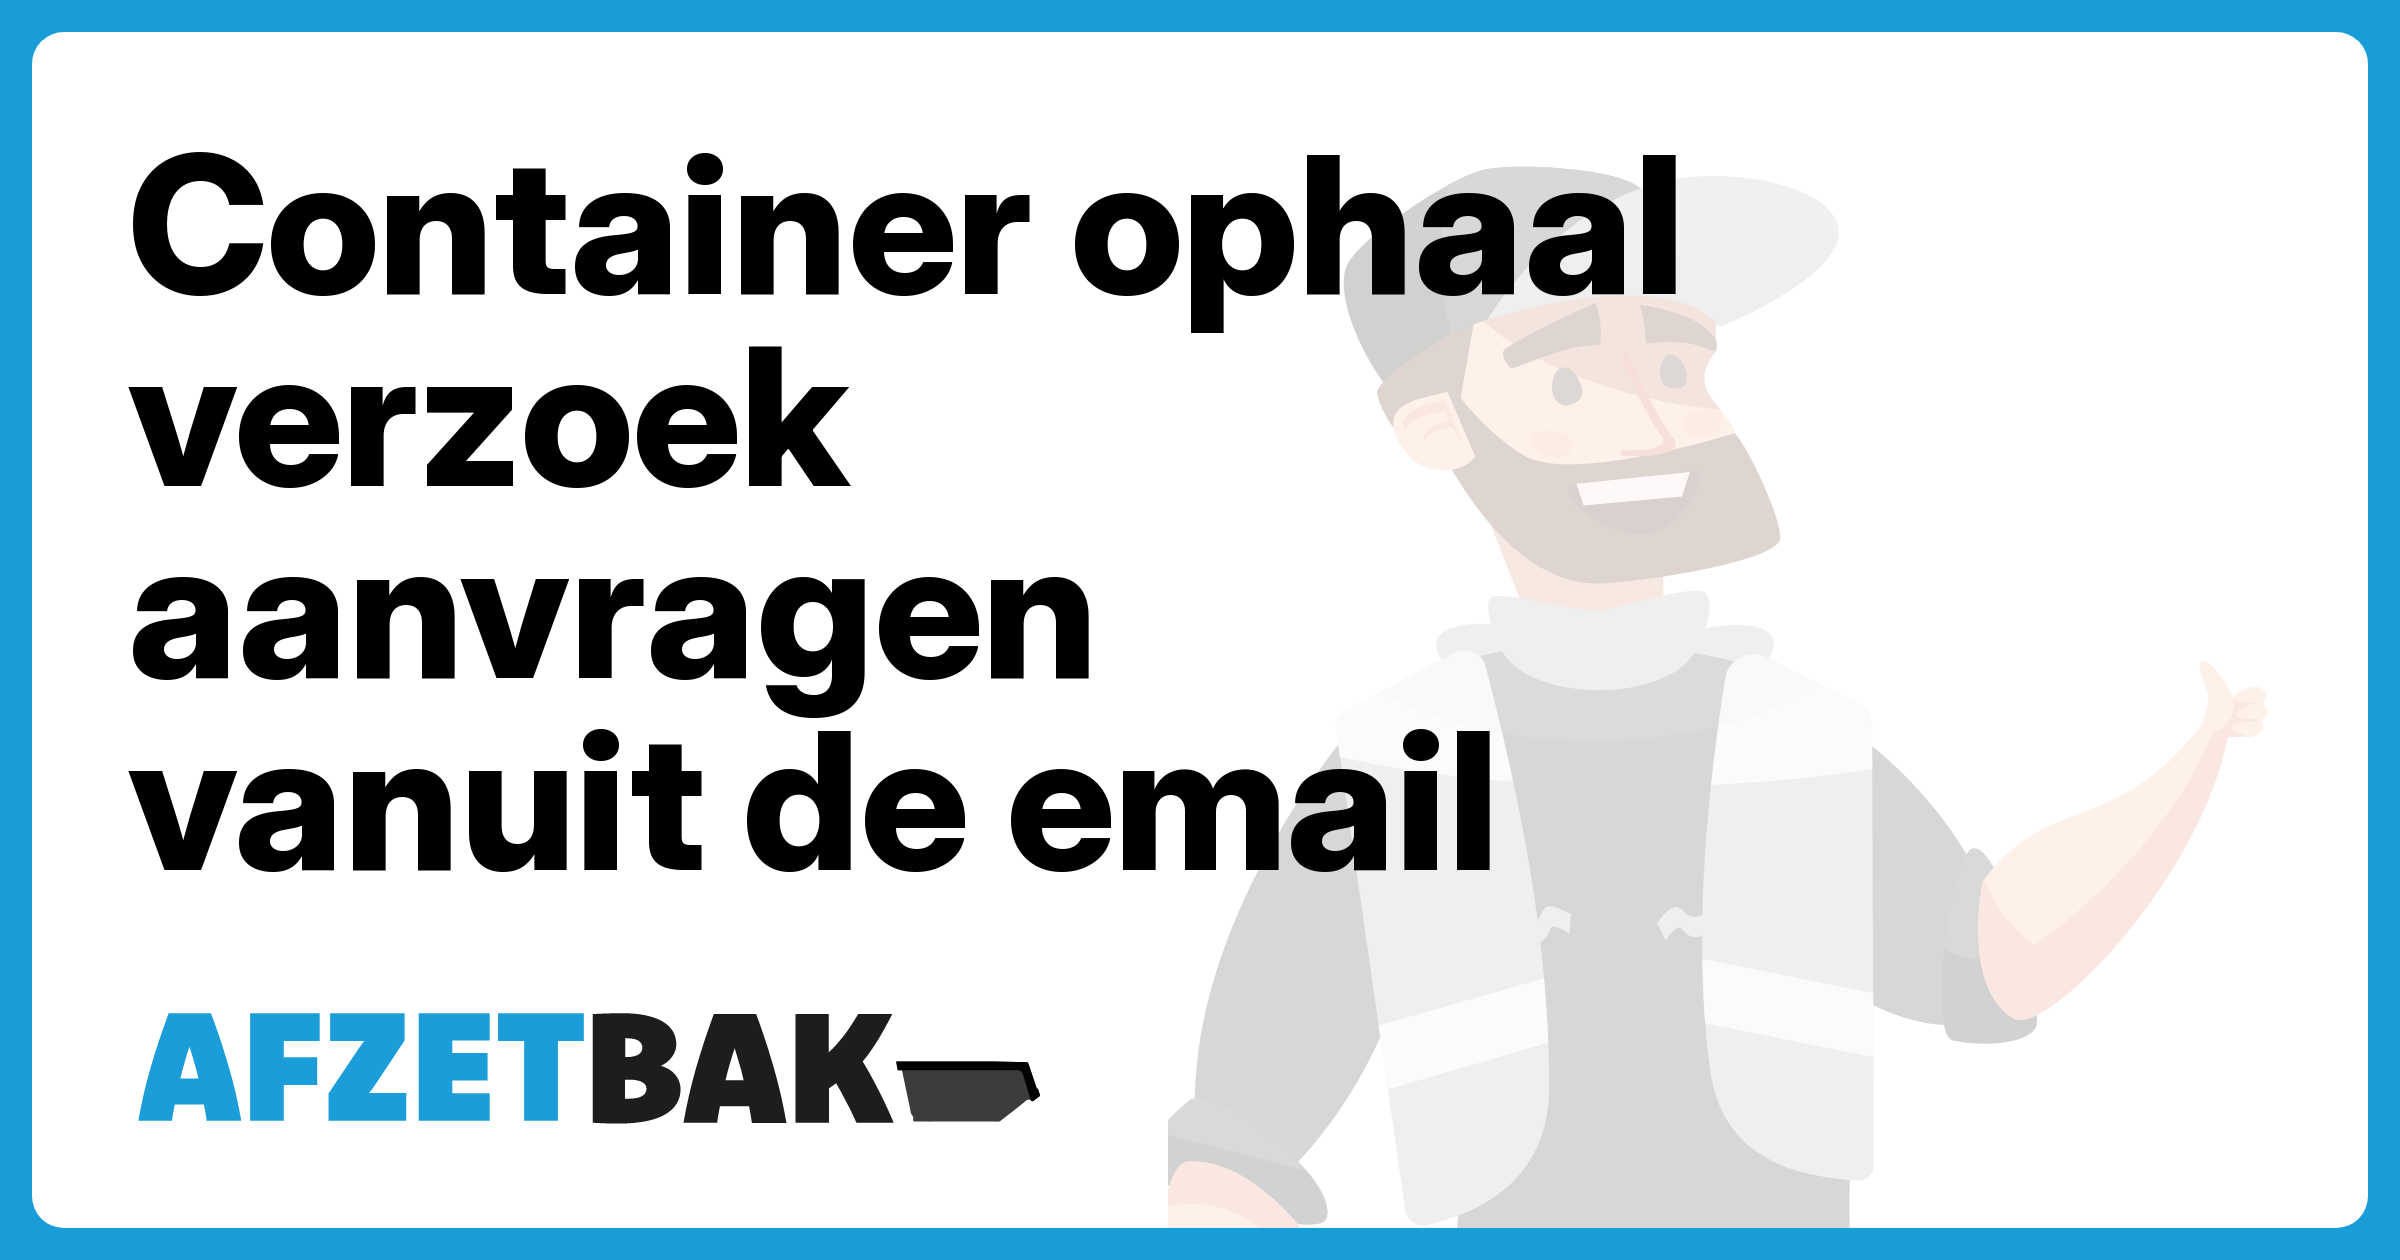 Container ophaal verzoek aanvragen vanuit de email - Afzetbak.nl